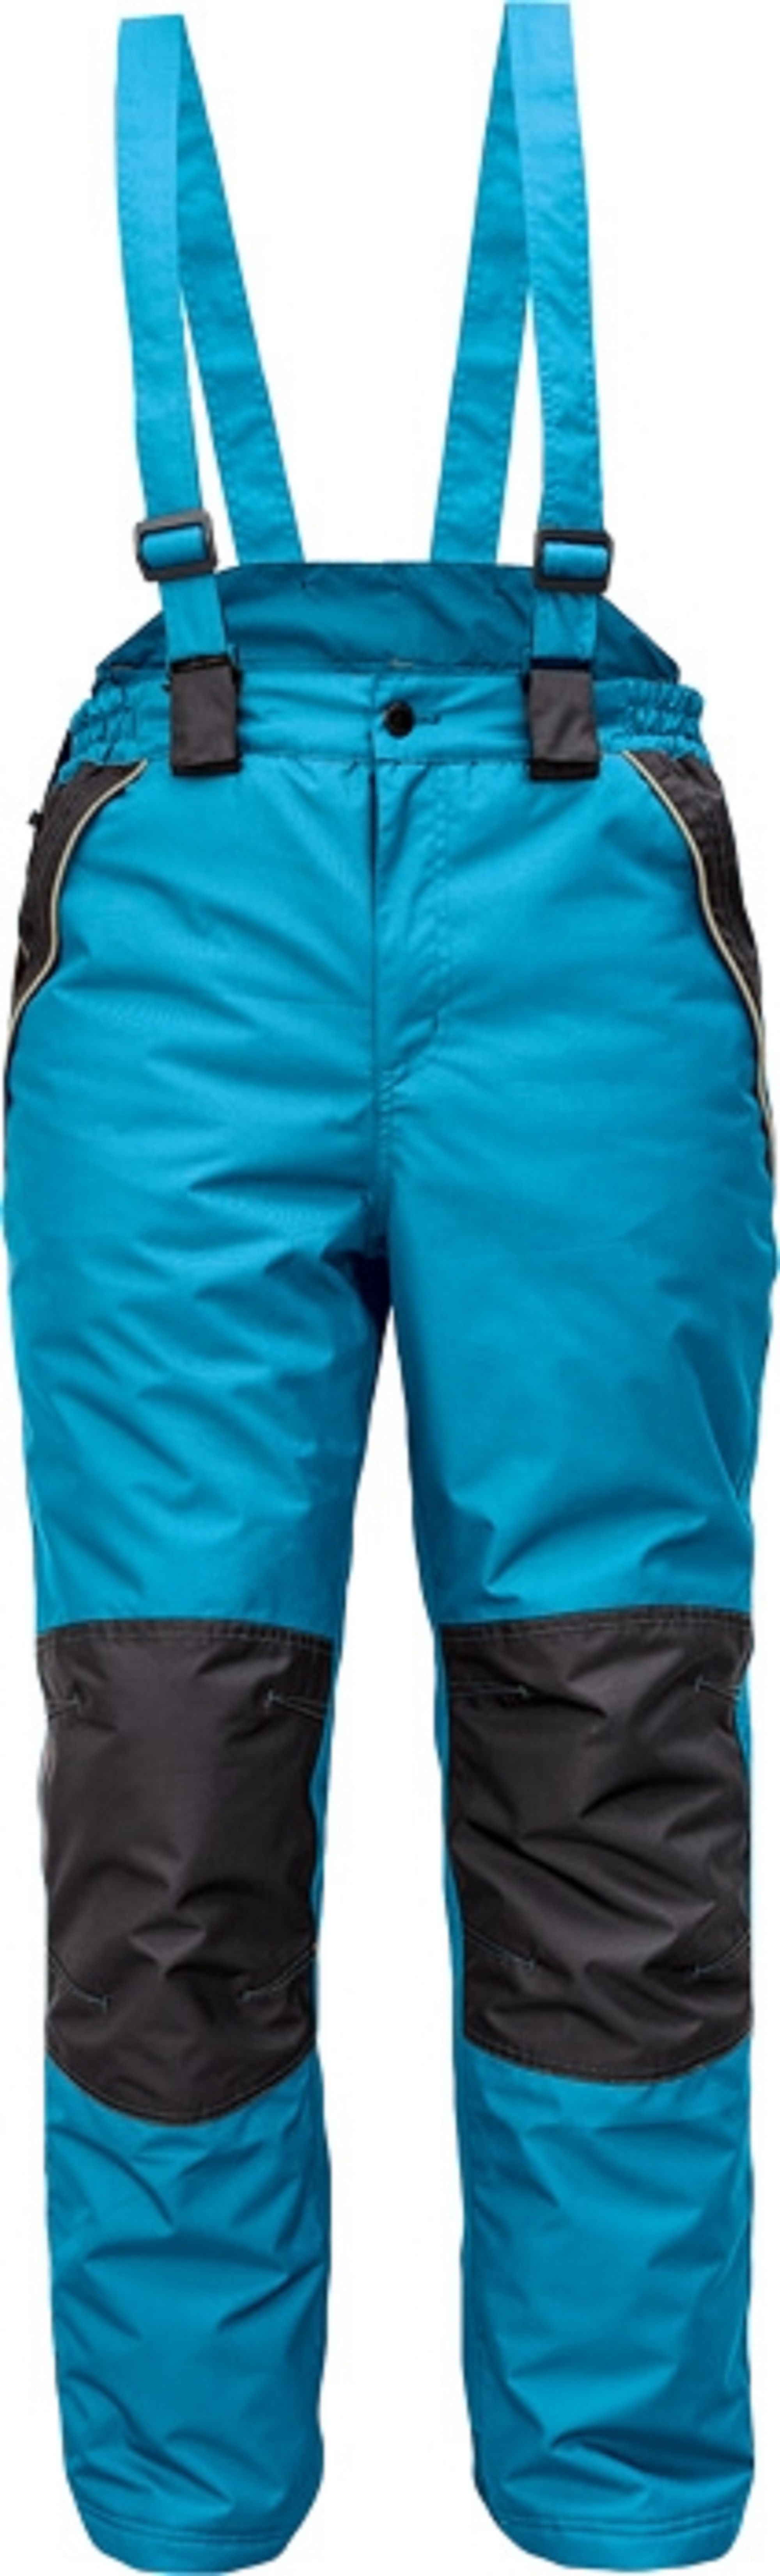 Cremorne winter (bretel) broek petrol blauw/zwart maat S